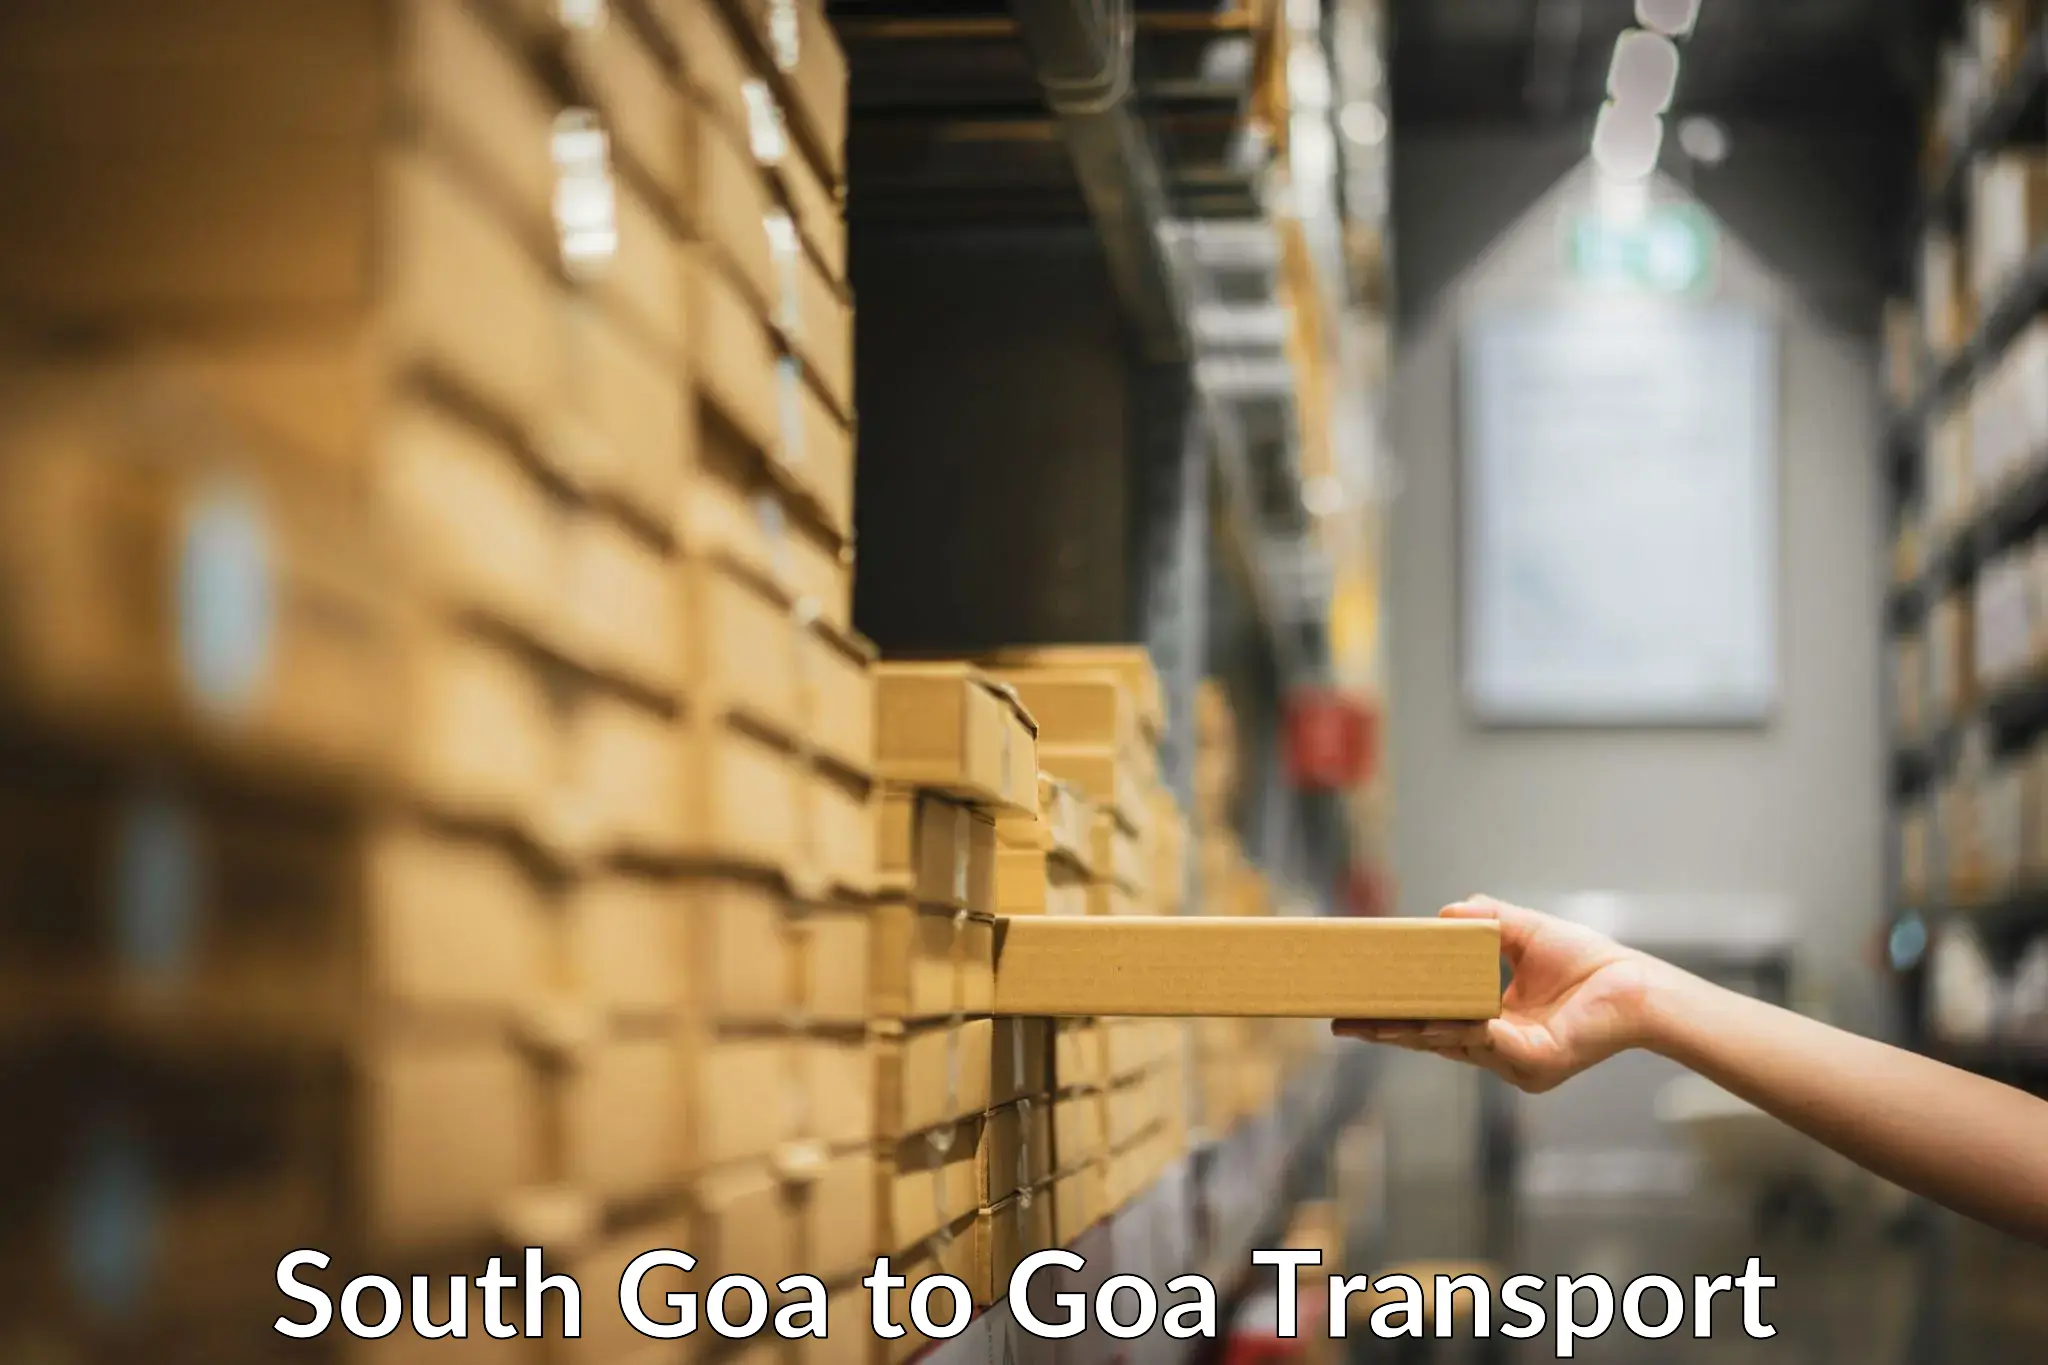 Air cargo transport services South Goa to Mormugao Port